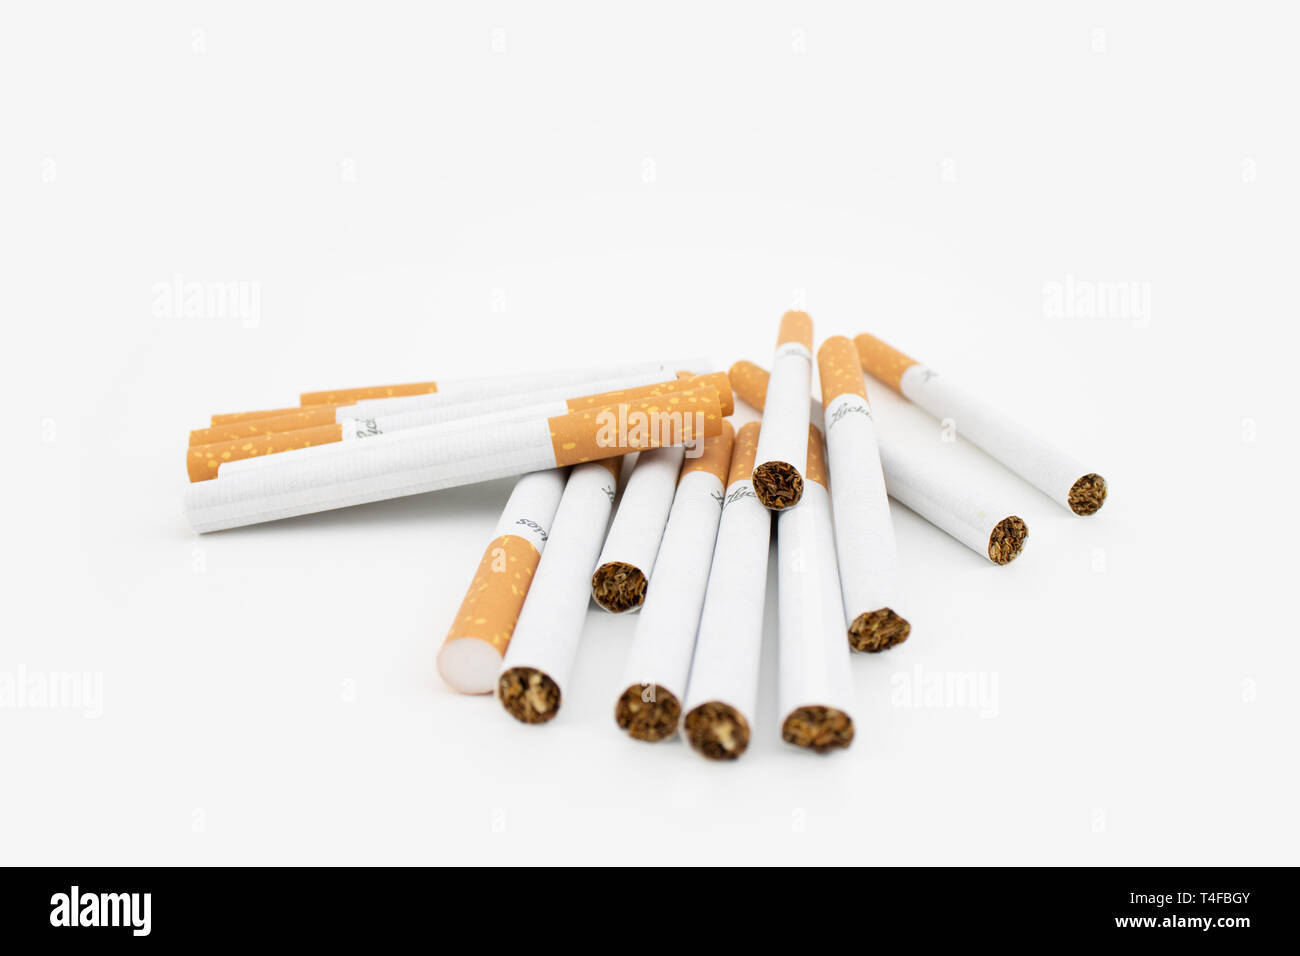 Zigarren auf weißem Hintergrund. Gefilterte Zigaretten. Der Tabak kann  zahlreiche Schäden im Organismus verursacht Stockfotografie - Alamy